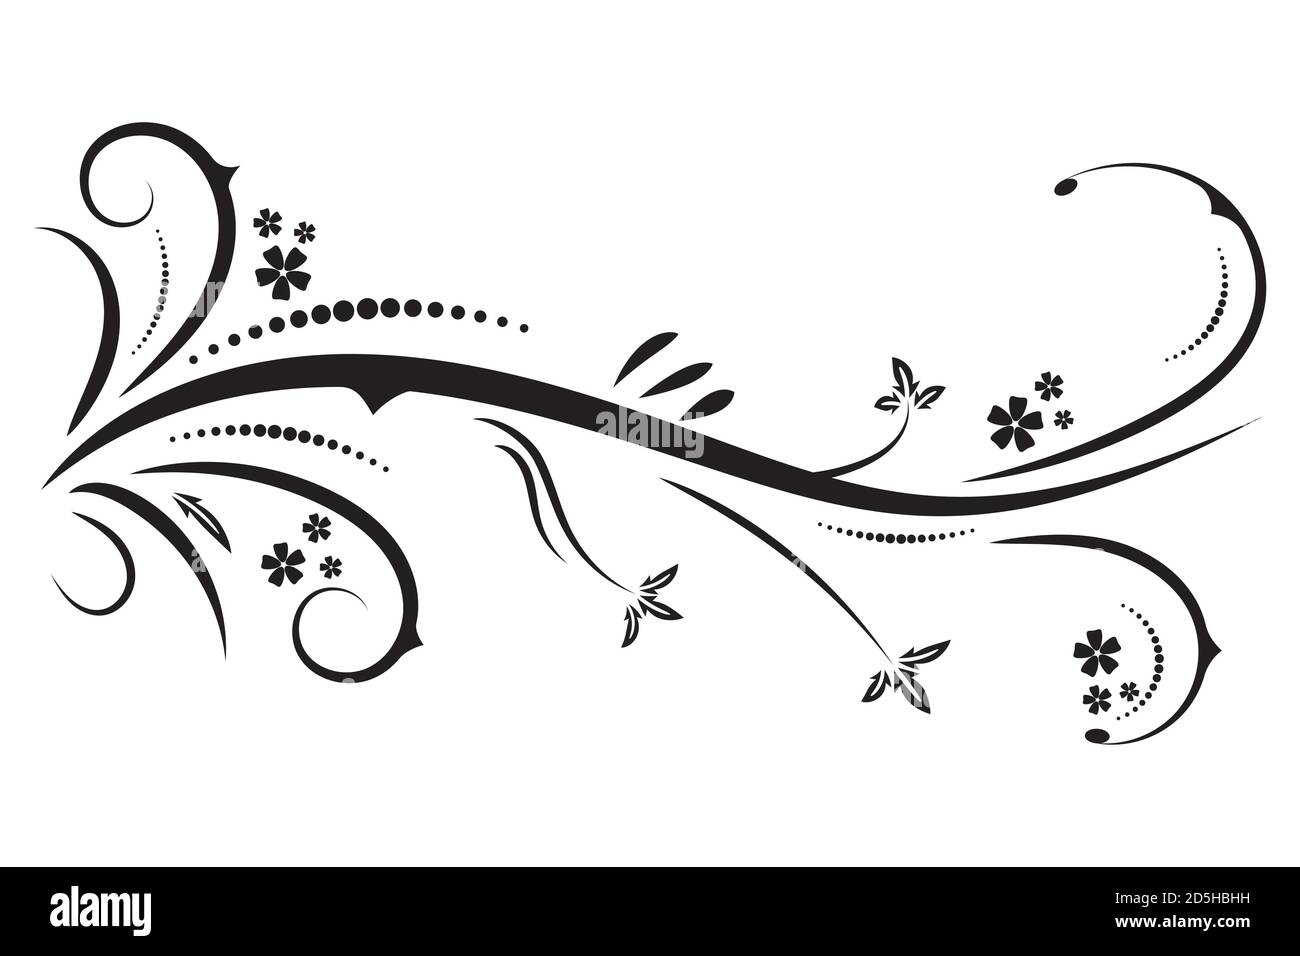 Disegno di grafica vettoriale con un elemento motivo floreale per il design. Astratto nero tribale floreale naturale design isolato su sfondo bianco Illustrazione Vettoriale